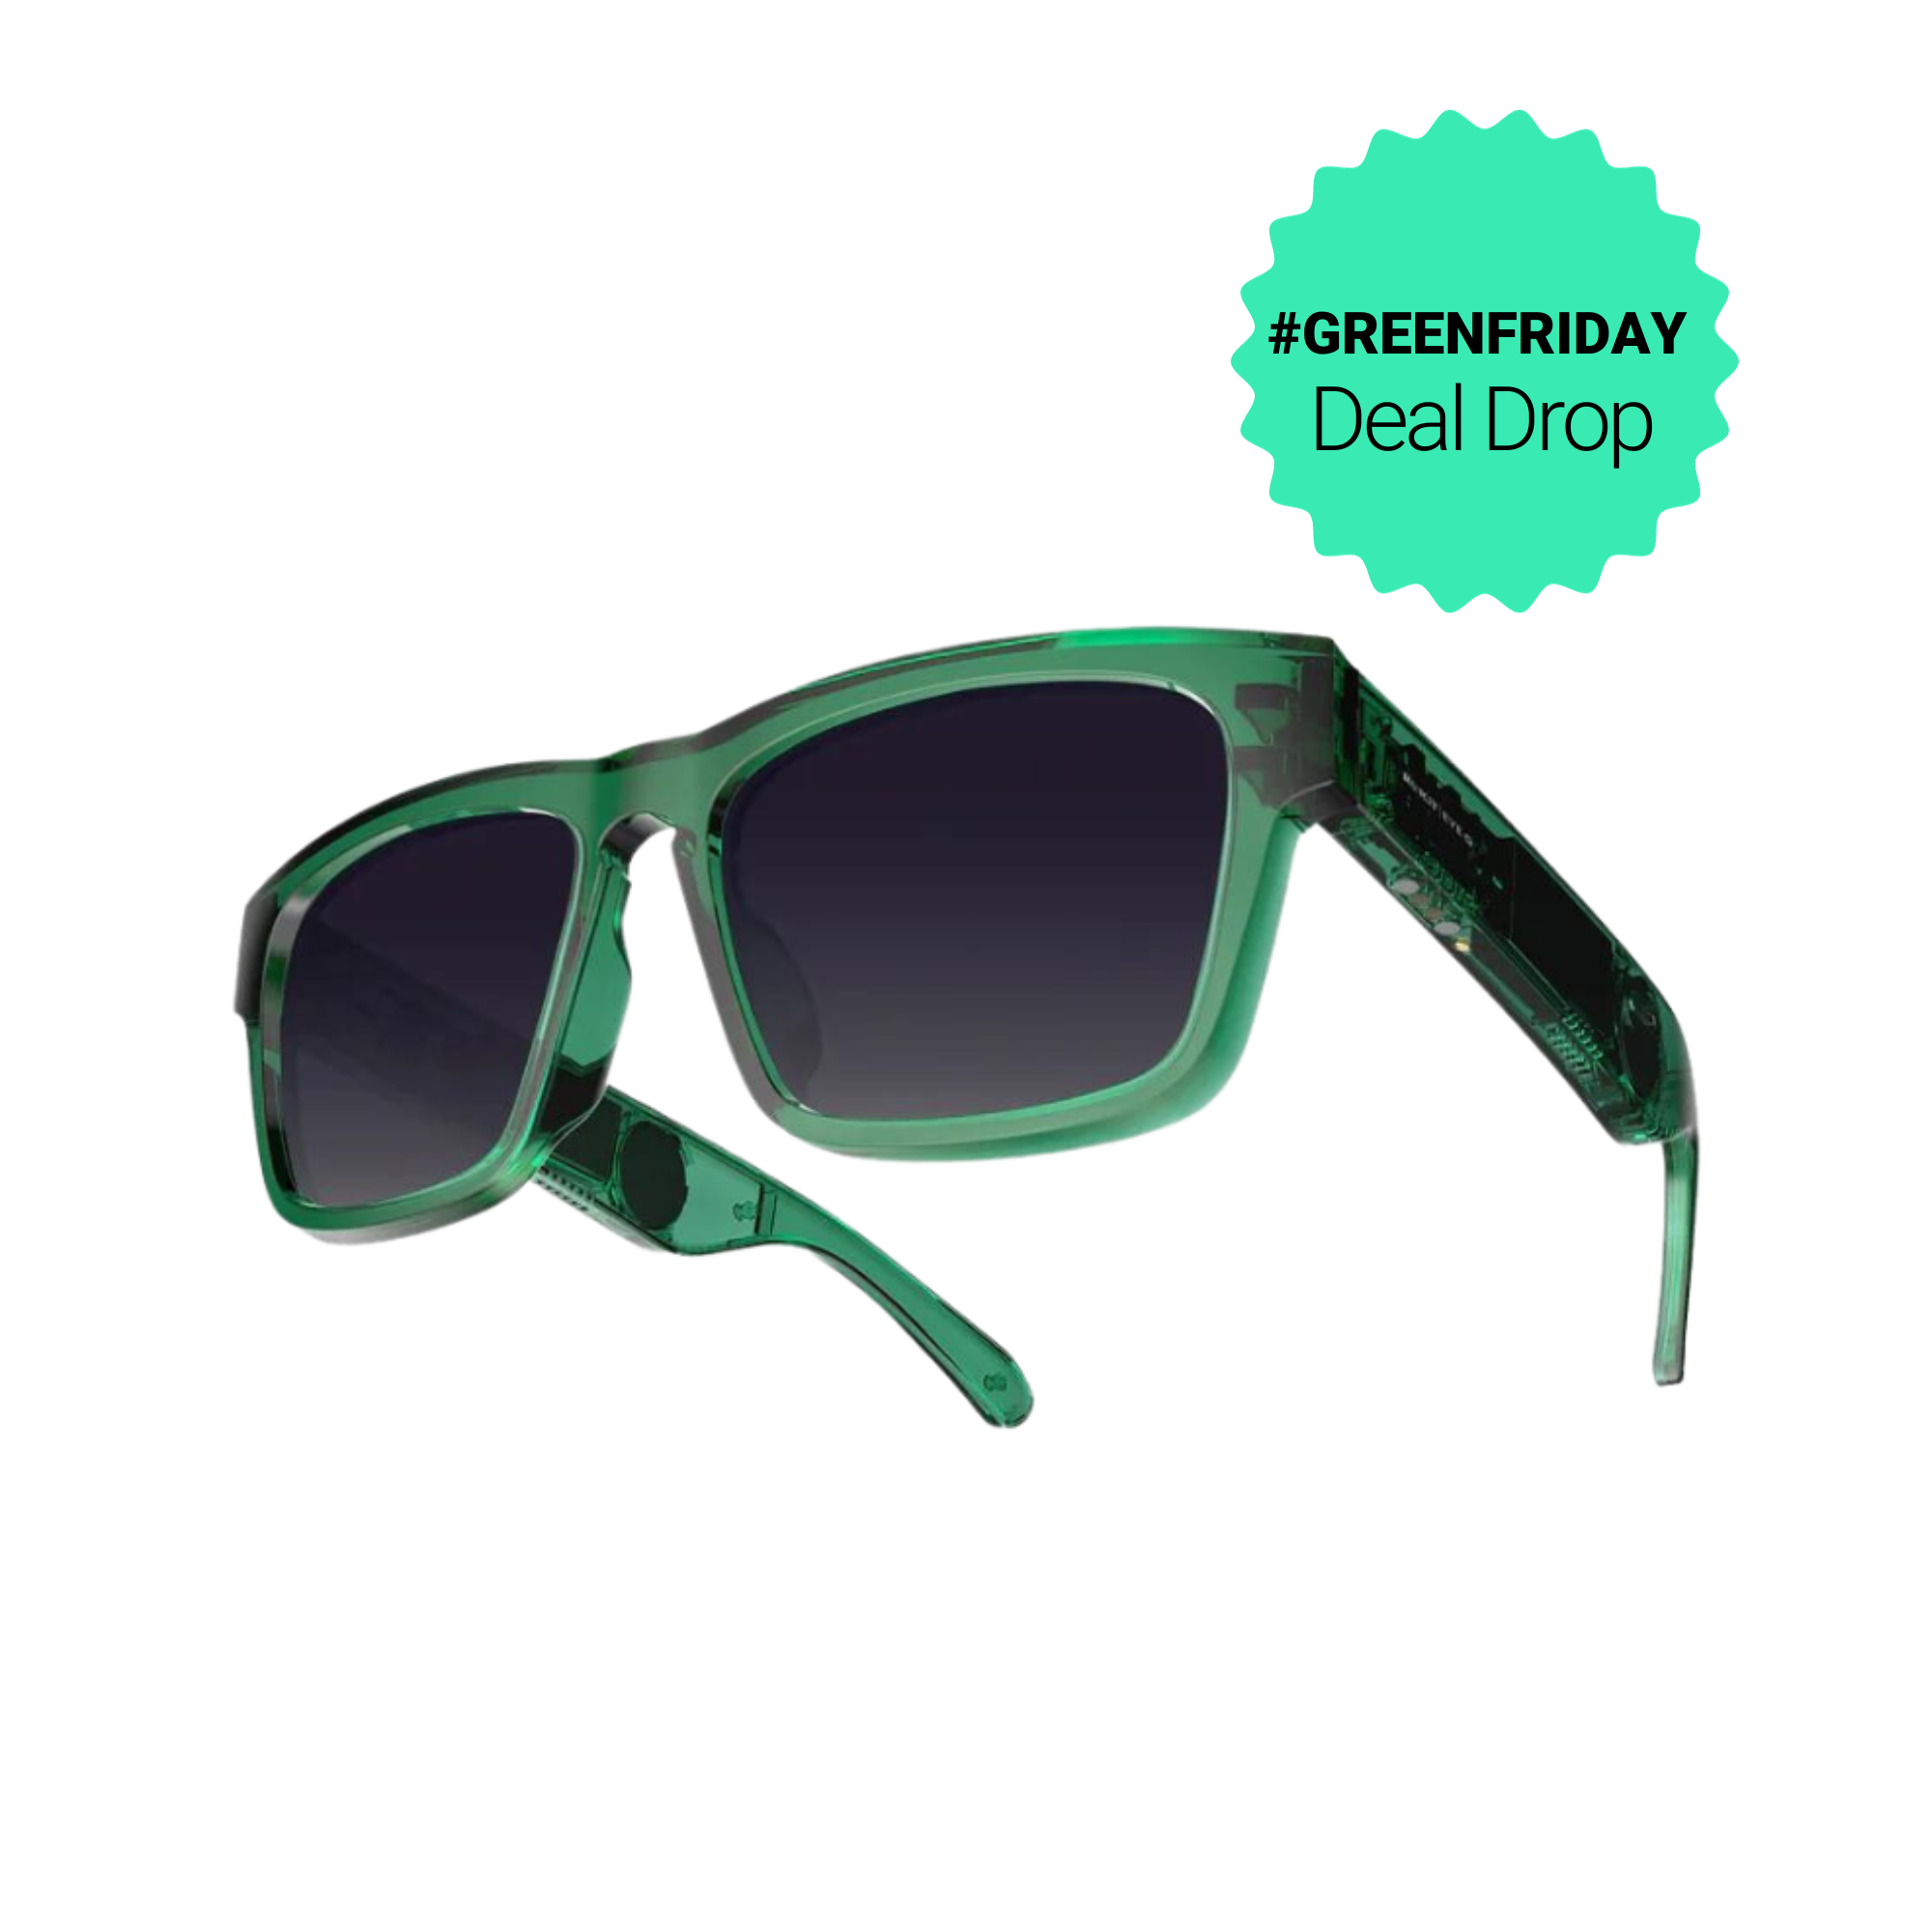 Rokit Eye Q Smart Glasses - Jade Green